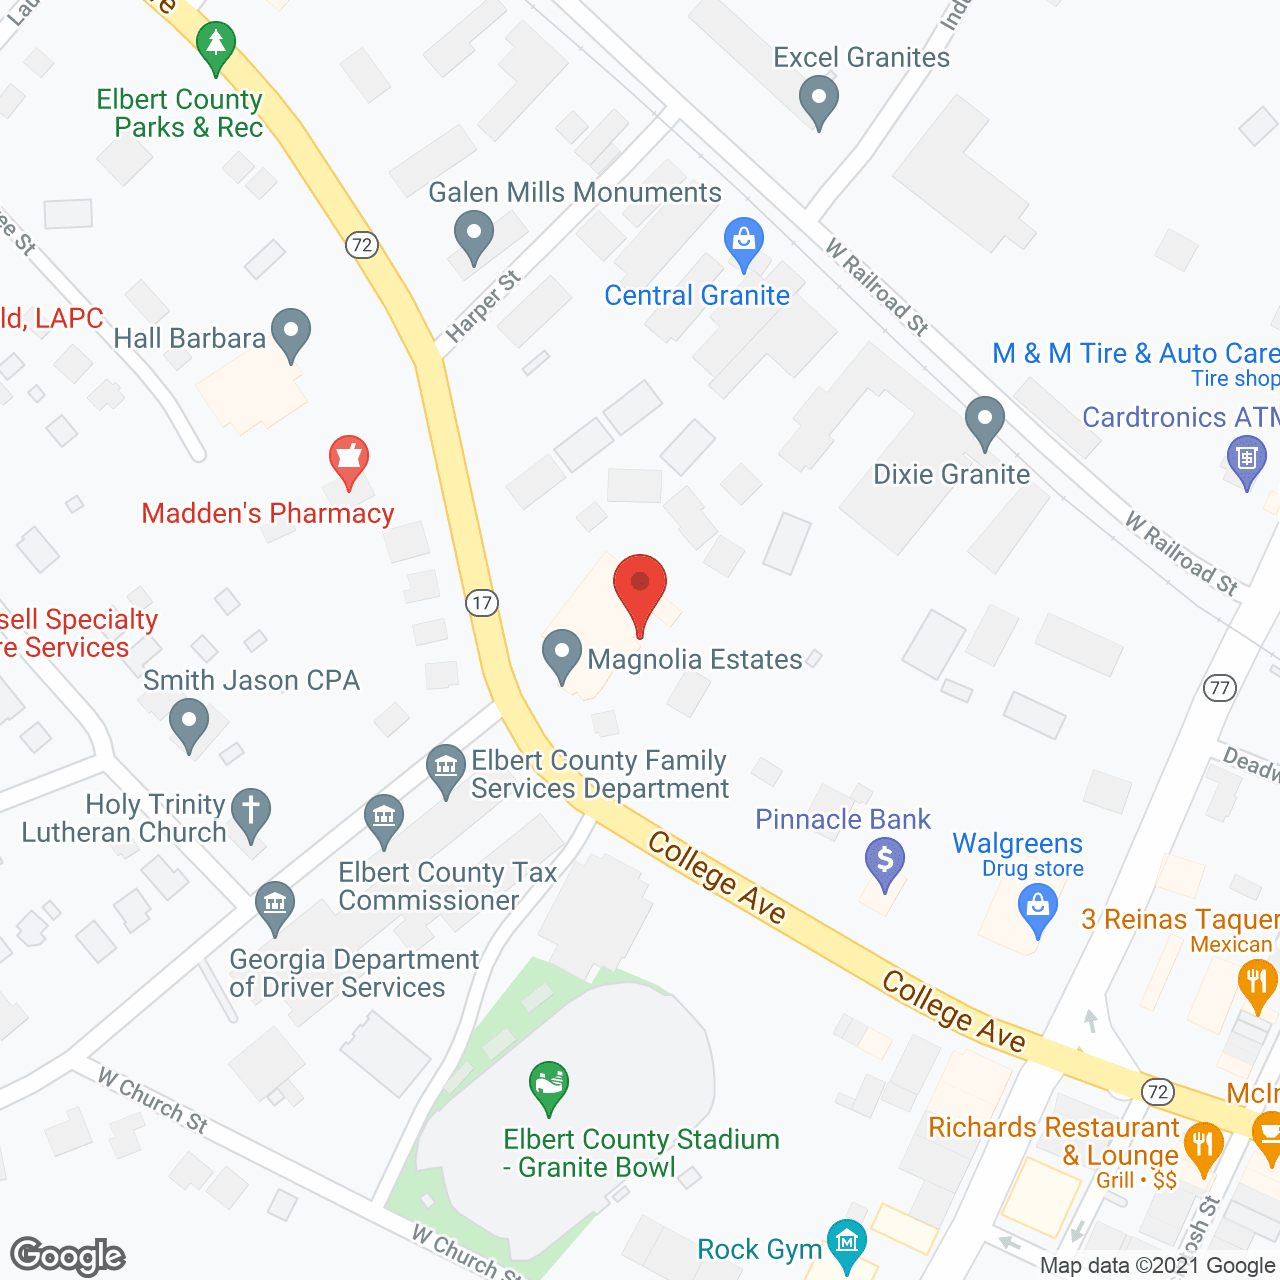 Magnolia Estates in google map